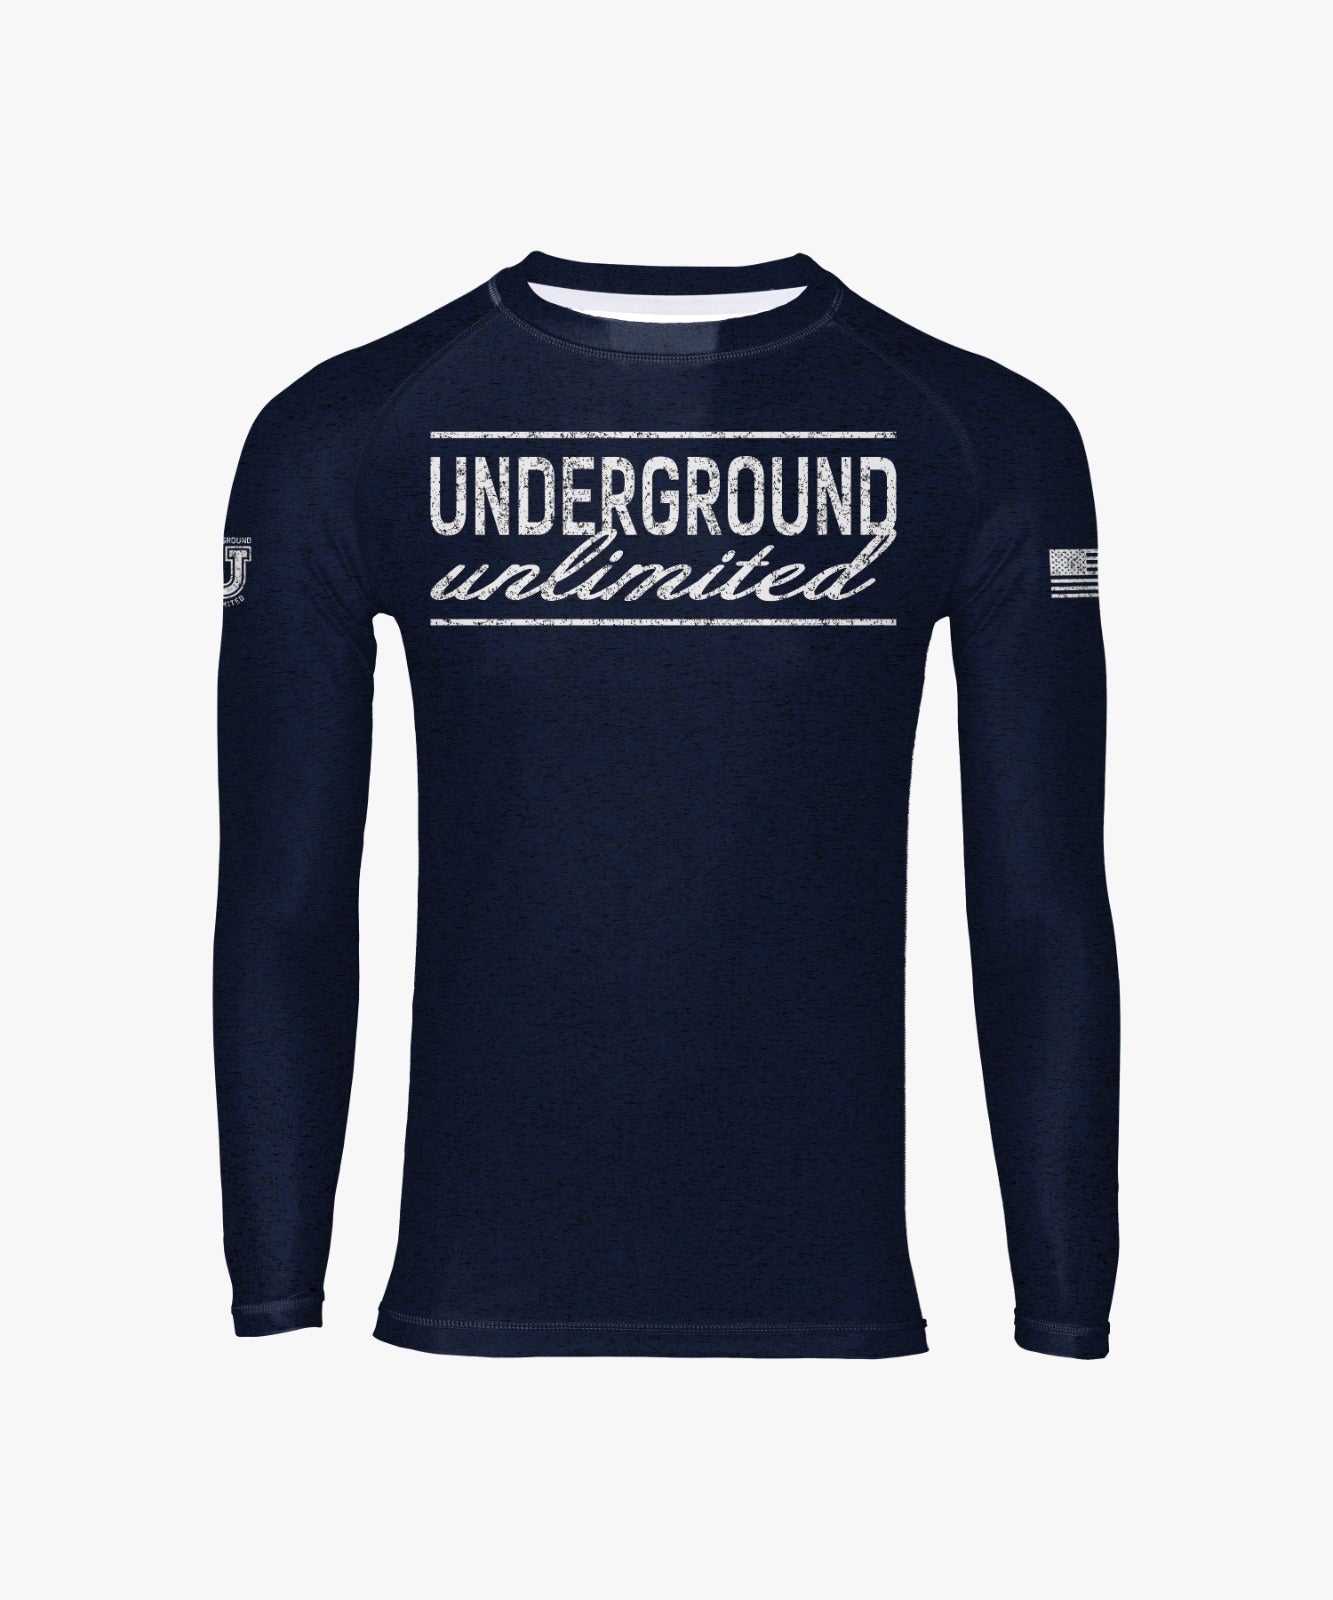 Underground Unlimited Performance Dri Tech Design ~ Navy